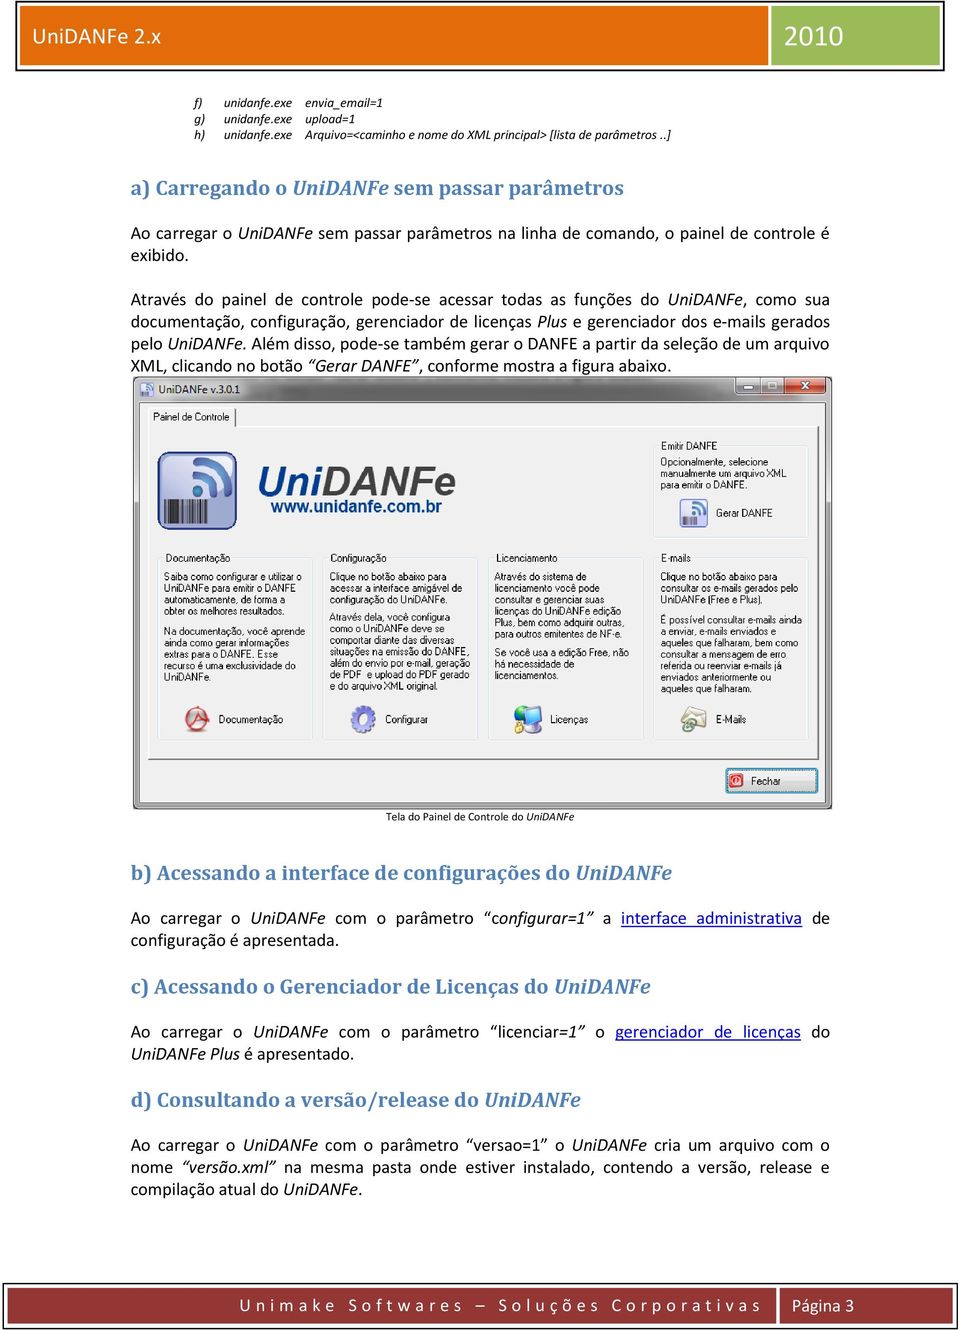 Através do painel de controle pode-se acessar todas as funções do UniDANFe, como sua documentação, configuração, gerenciador de licenças Plus e gerenciador dos e-mails gerados pelo UniDANFe.